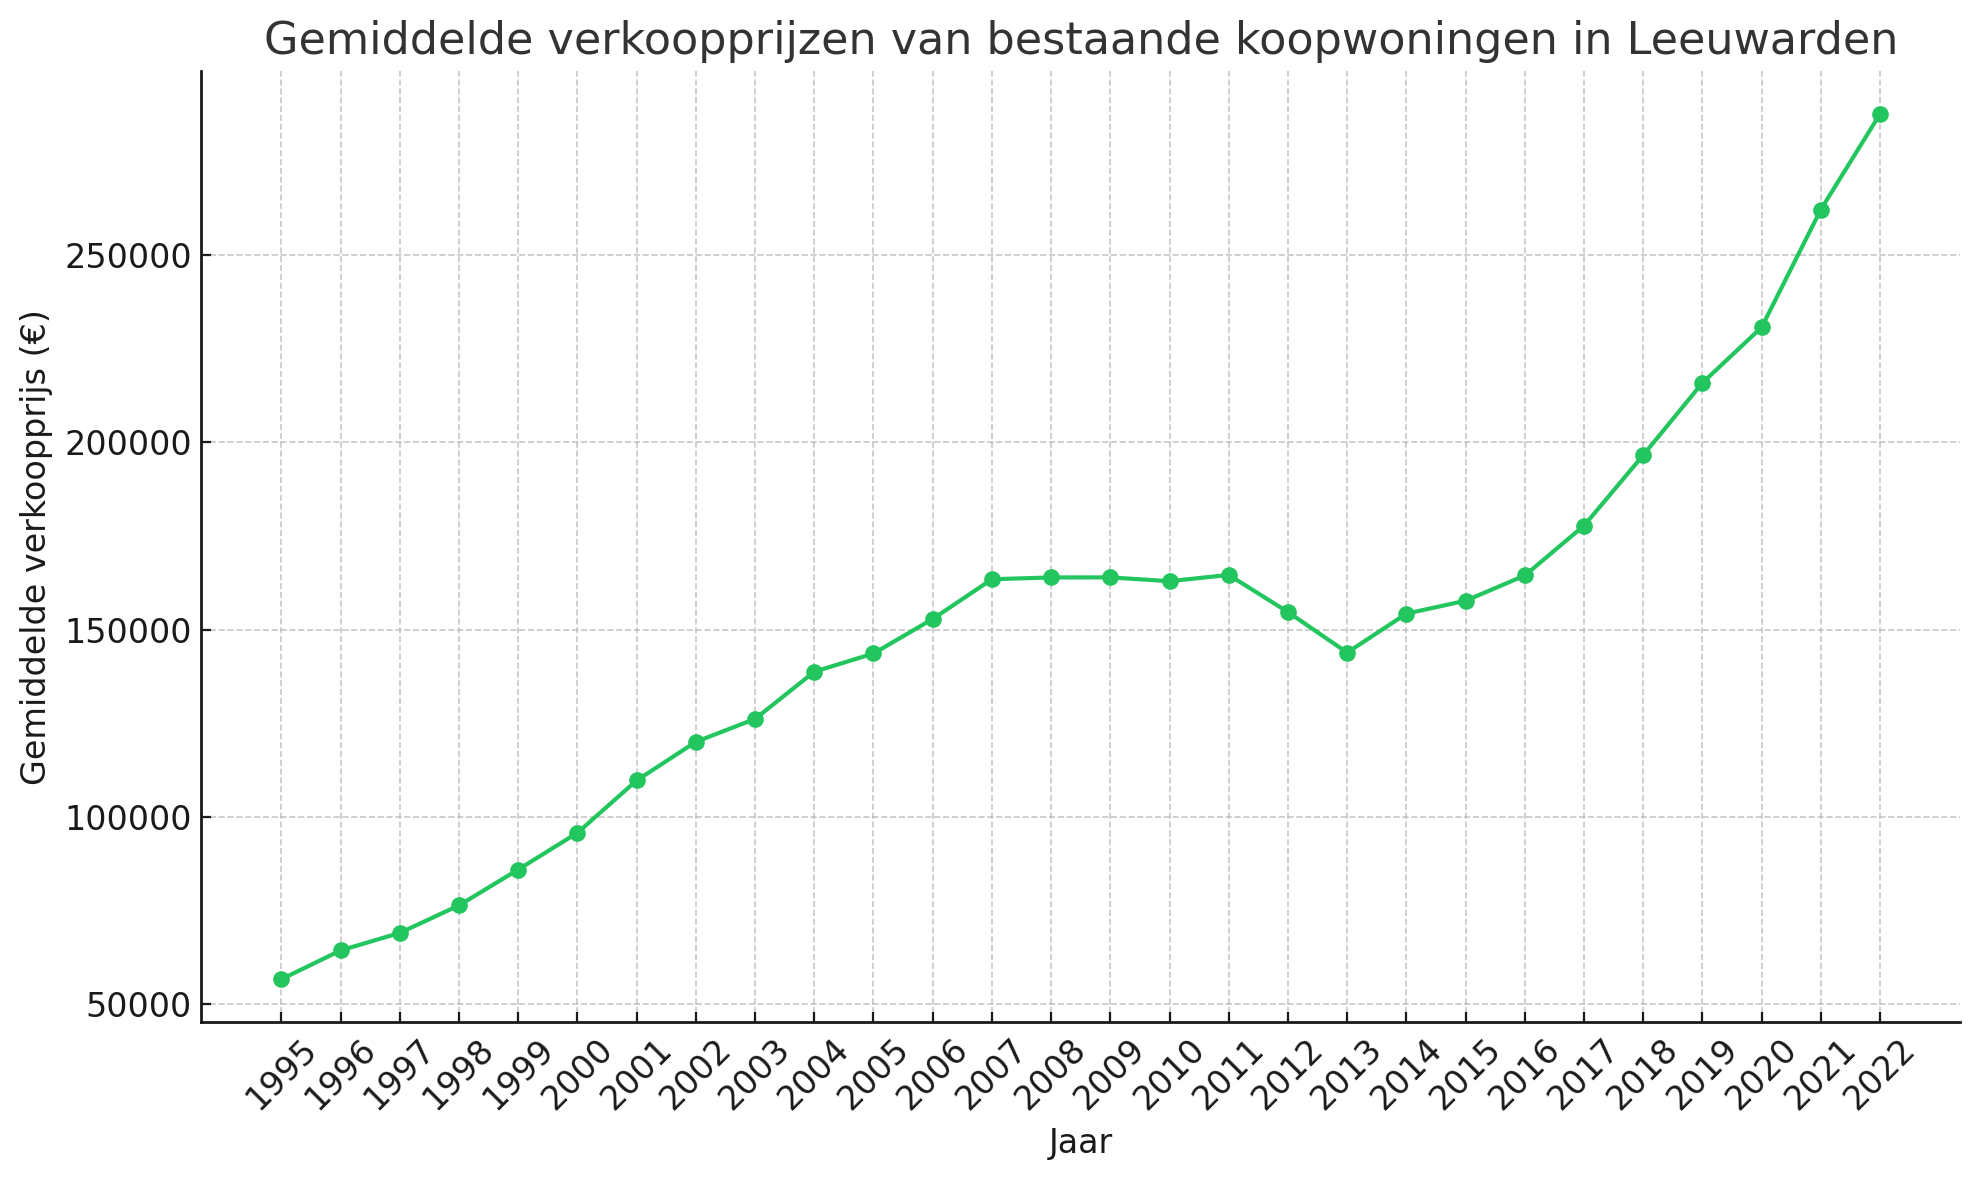 Gemiddelde verkoopprijzen van bestaande koopwoningen Leeuwarden